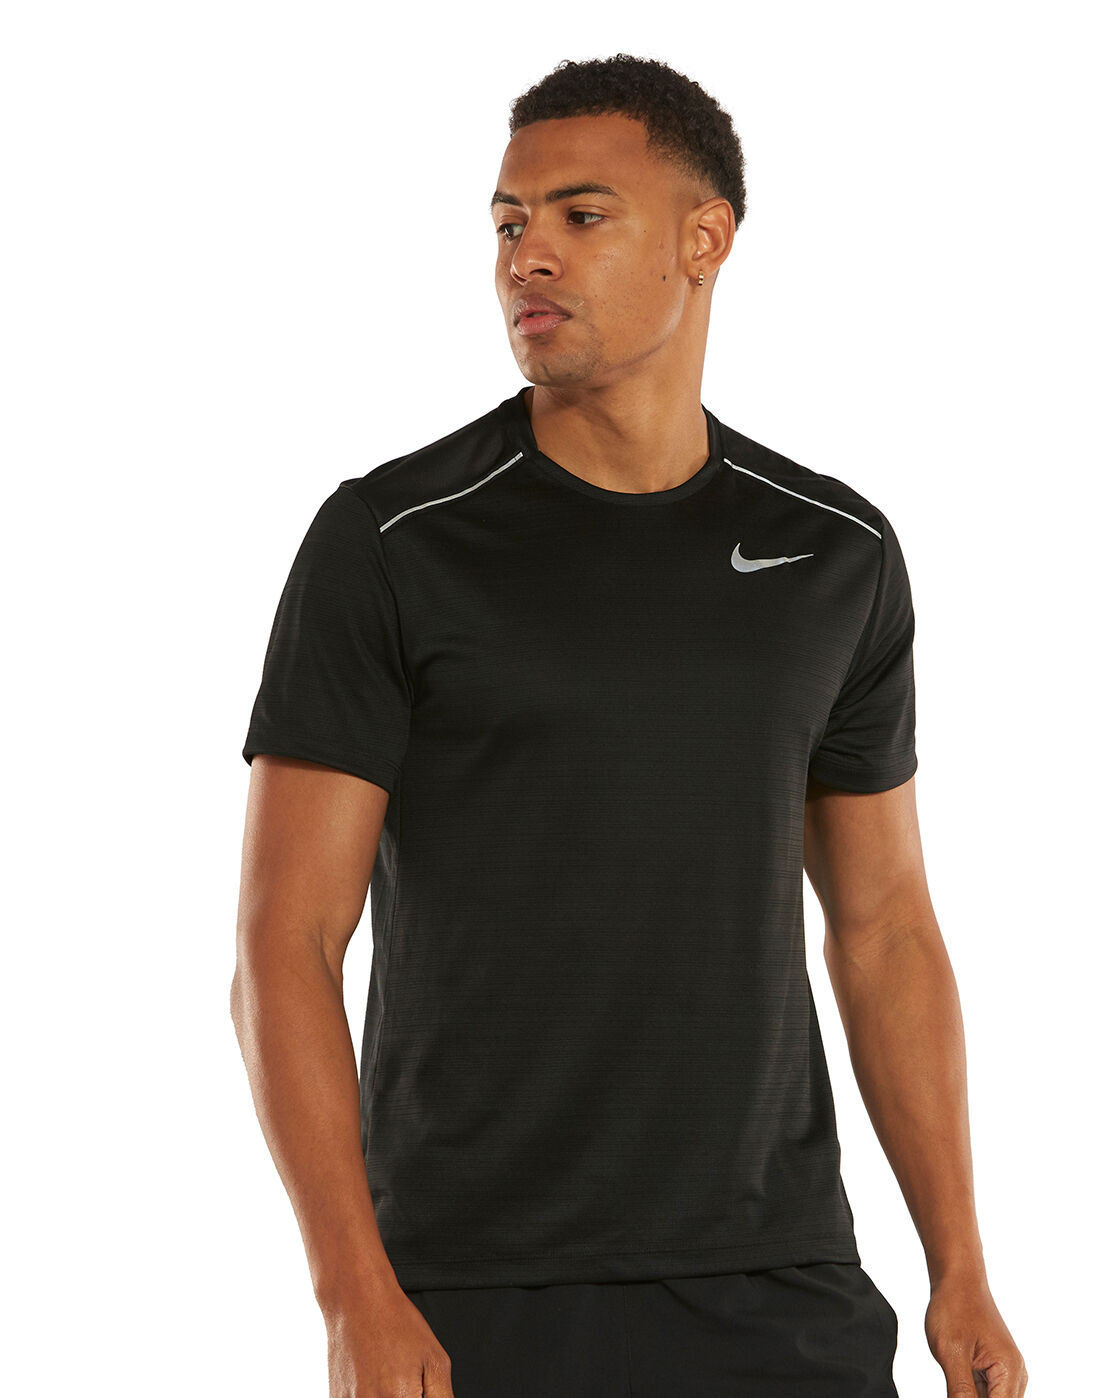 Men's Black Nike Dry Running T-Shirt 